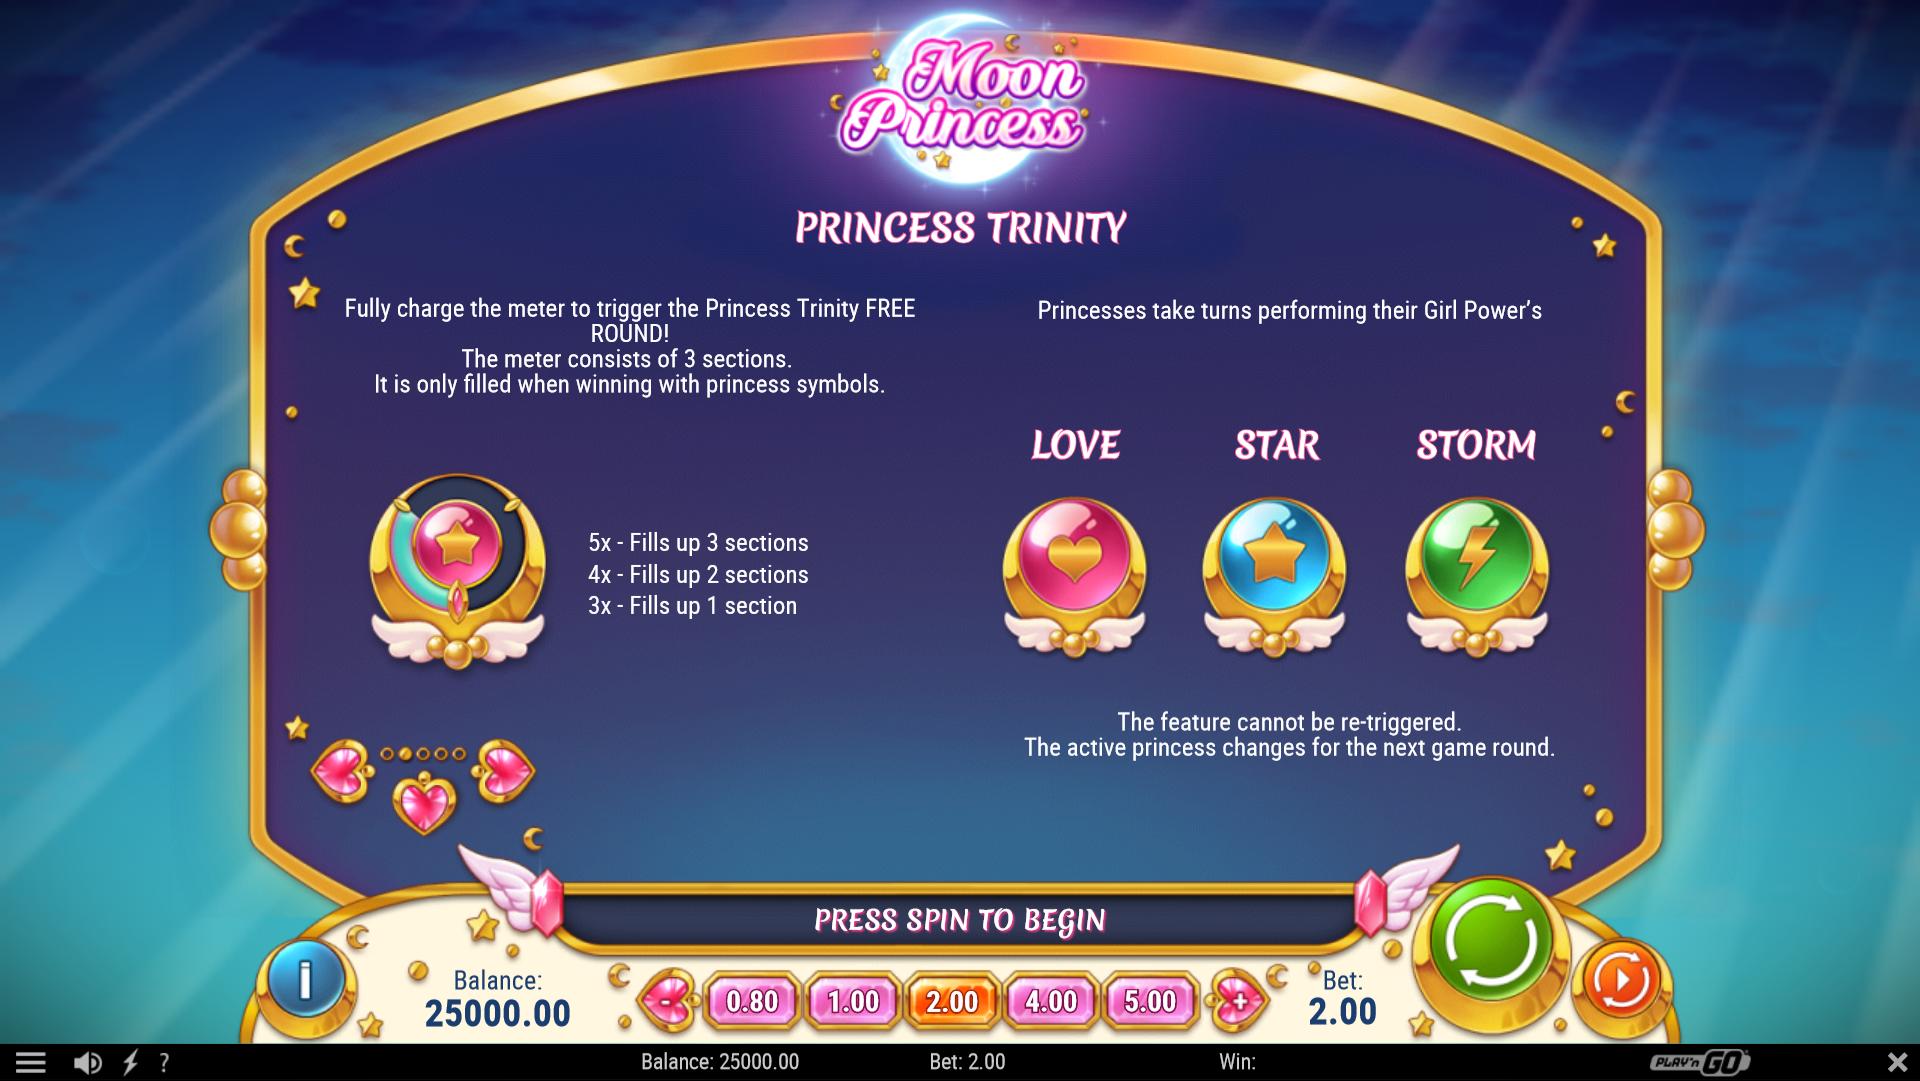 Moon Princess Princess Trinity